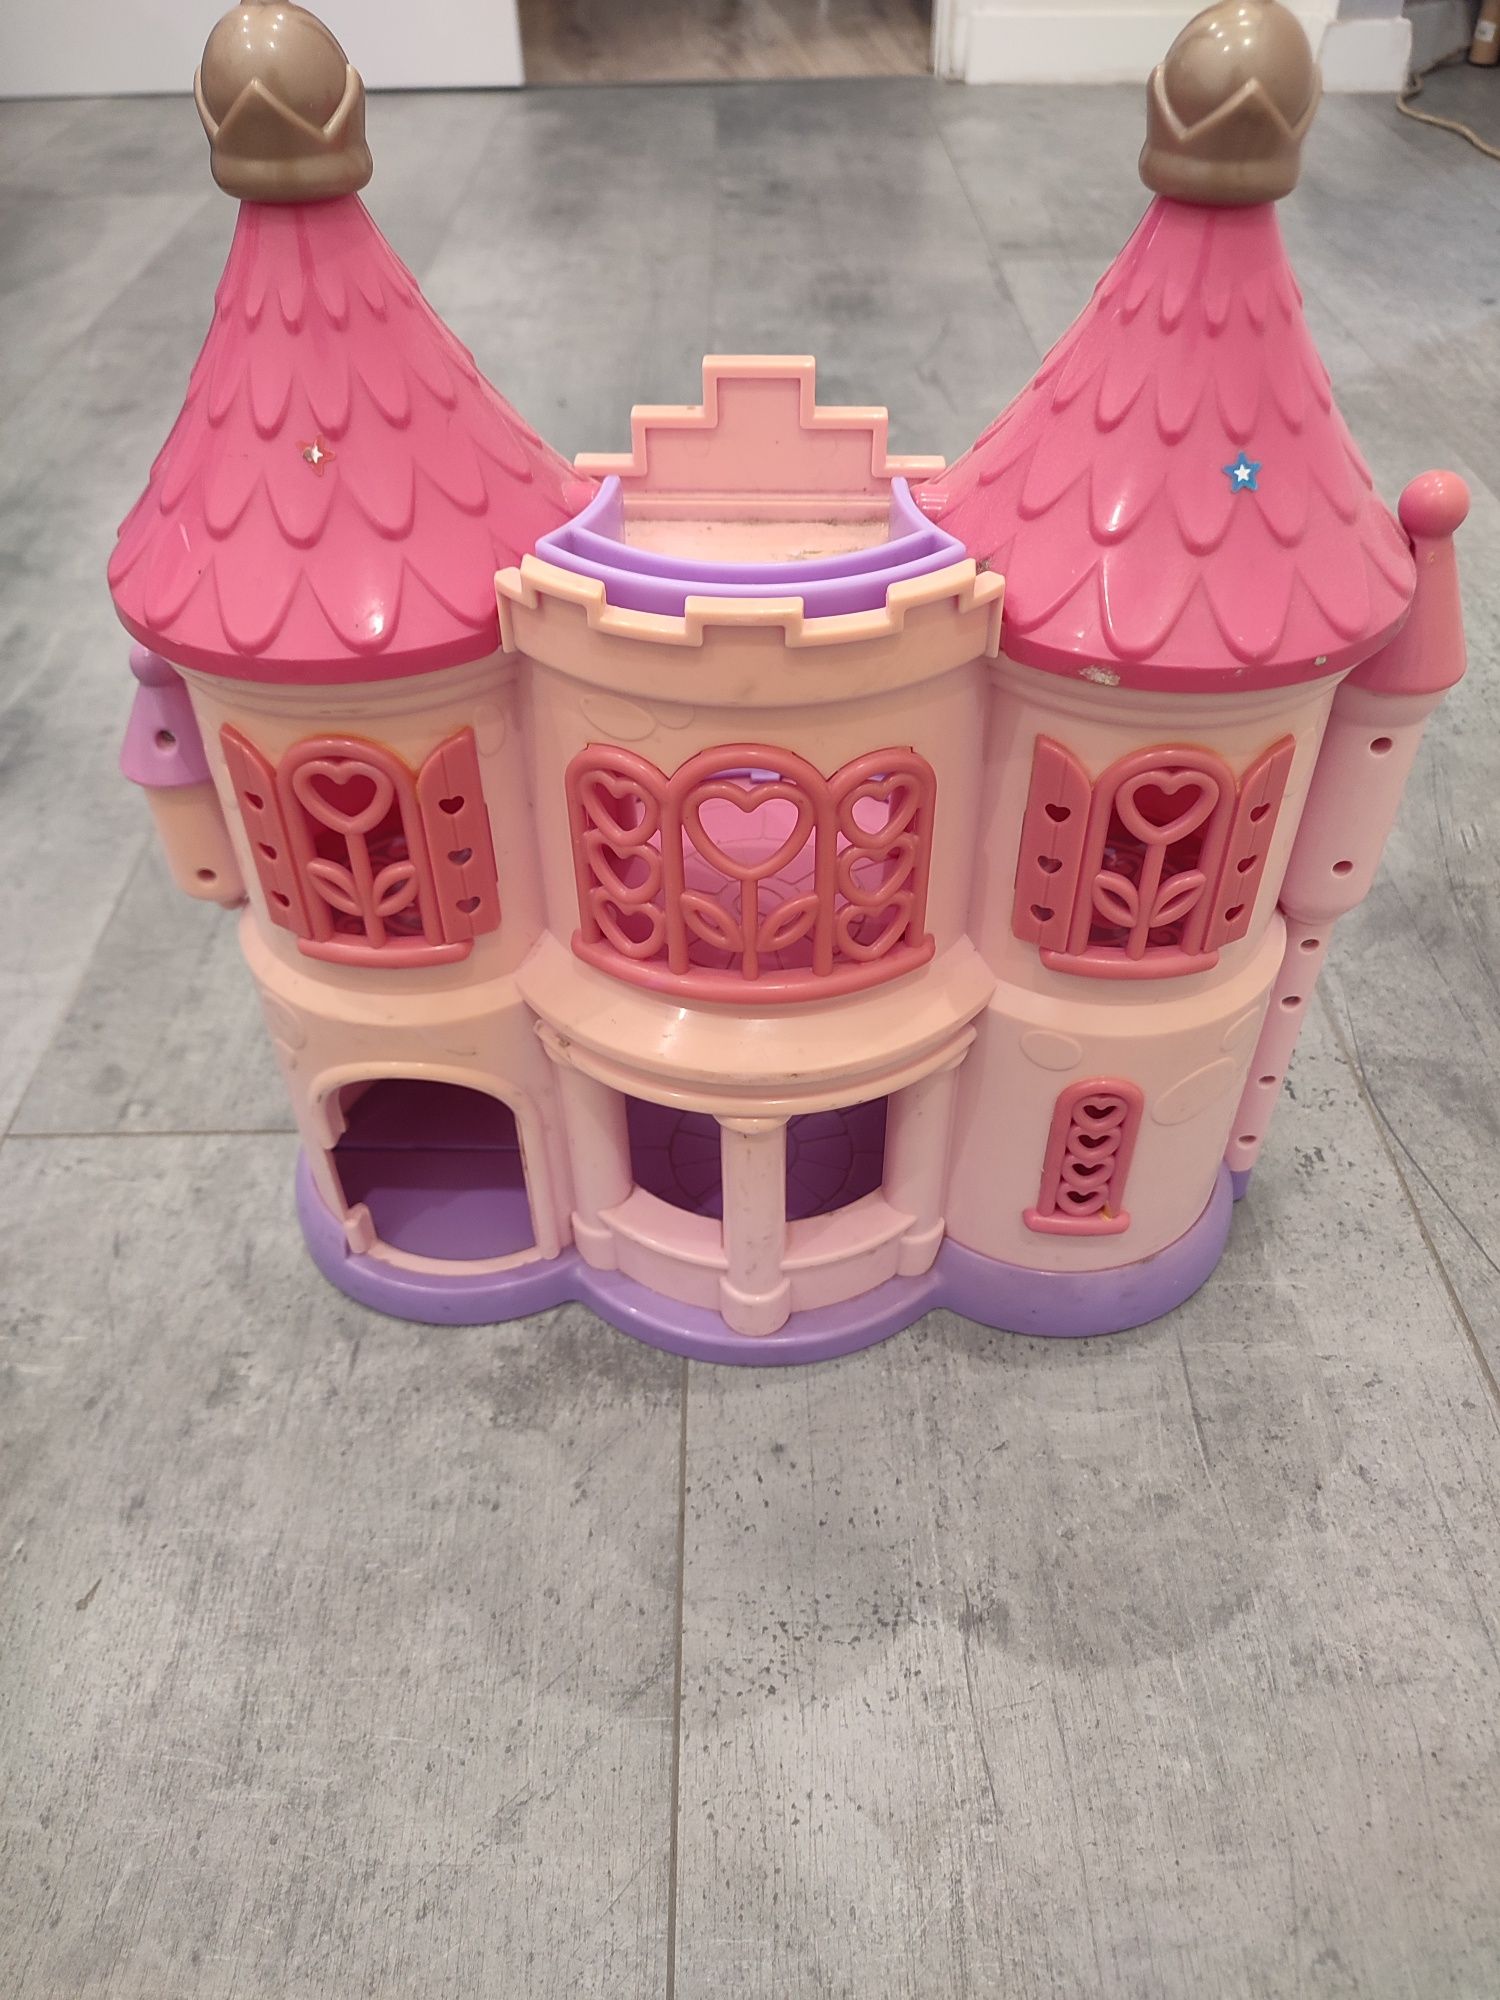 Domek zamek zabawka dla dzieci.